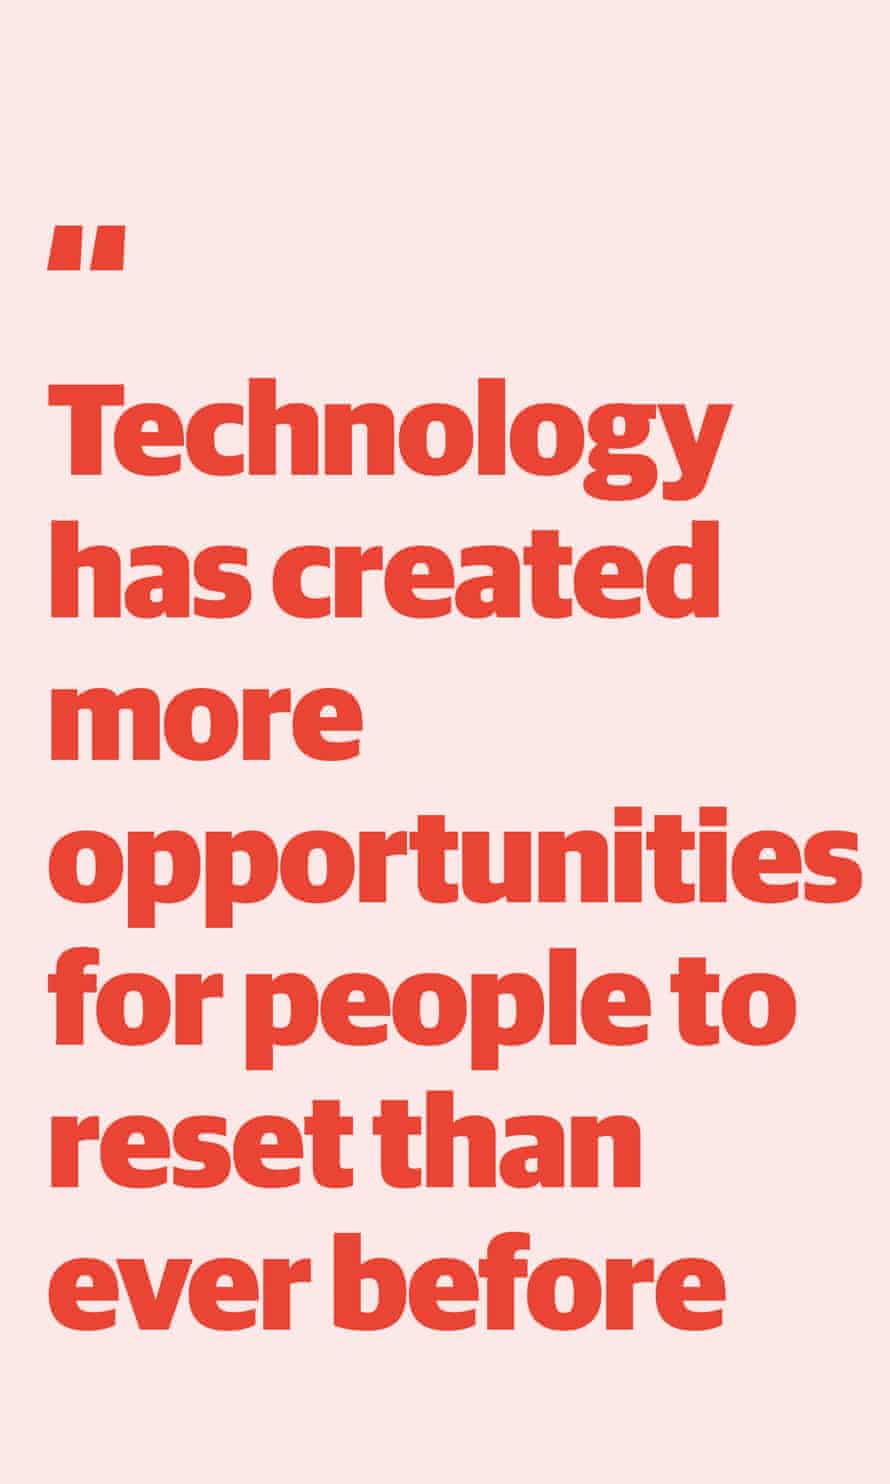 Zitieren: "Die Technologie hat mehr Möglichkeiten für Menschen geschaffen, sich zurückzusetzen als je zuvor"